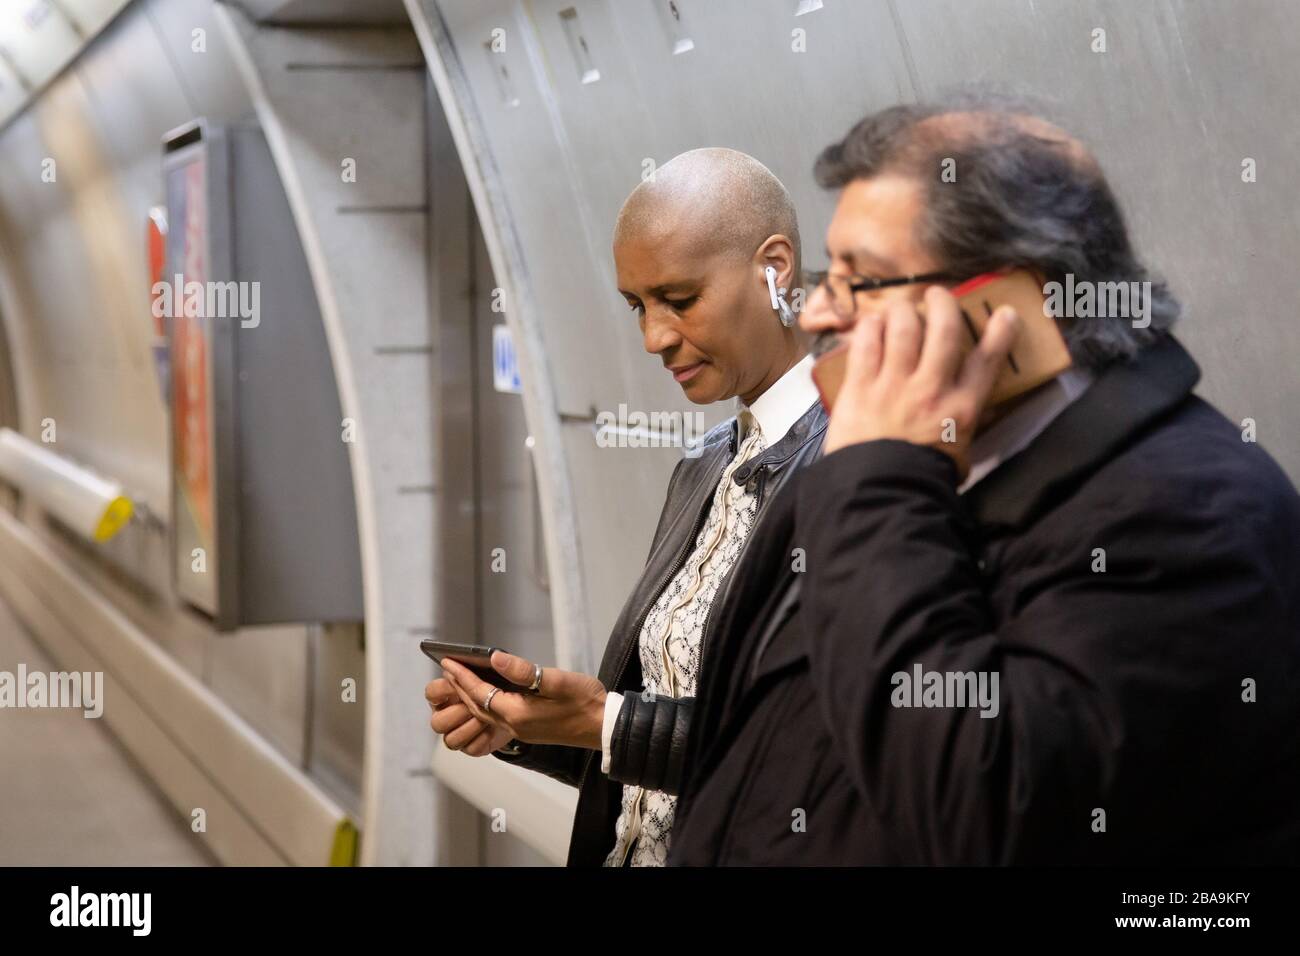 Une femme utilise son smartphone sur le métro alors qu'un homme fait un appel téléphonique, qui fait partie du métro de Londres Banque D'Images